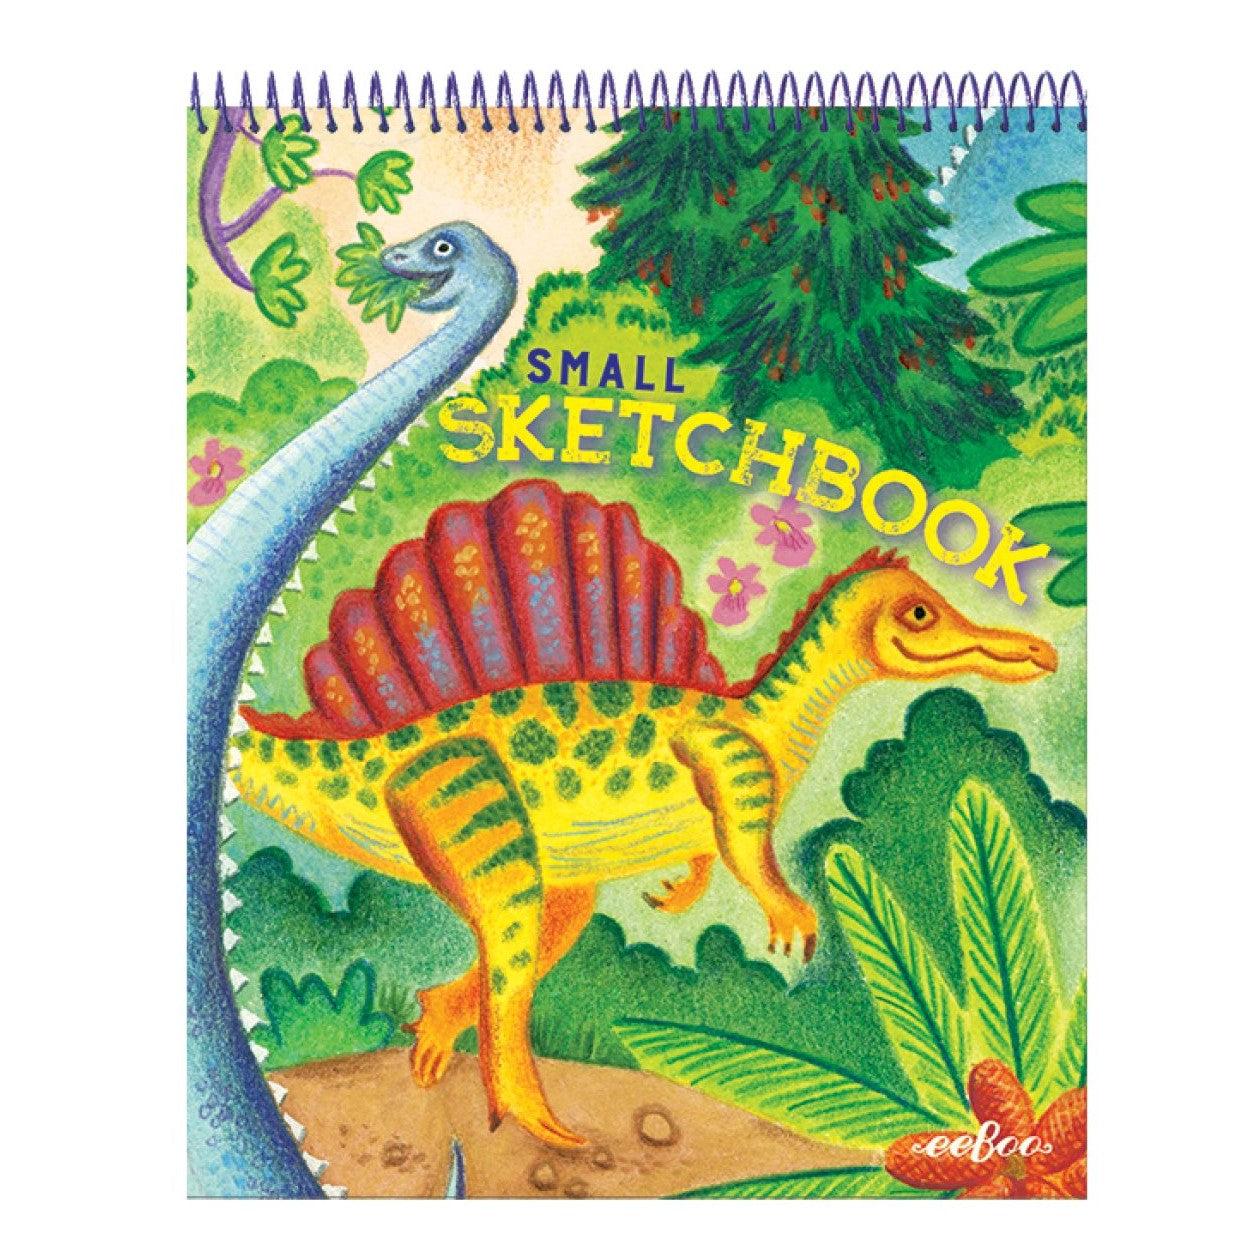 Small Dinosaur Sketchbook